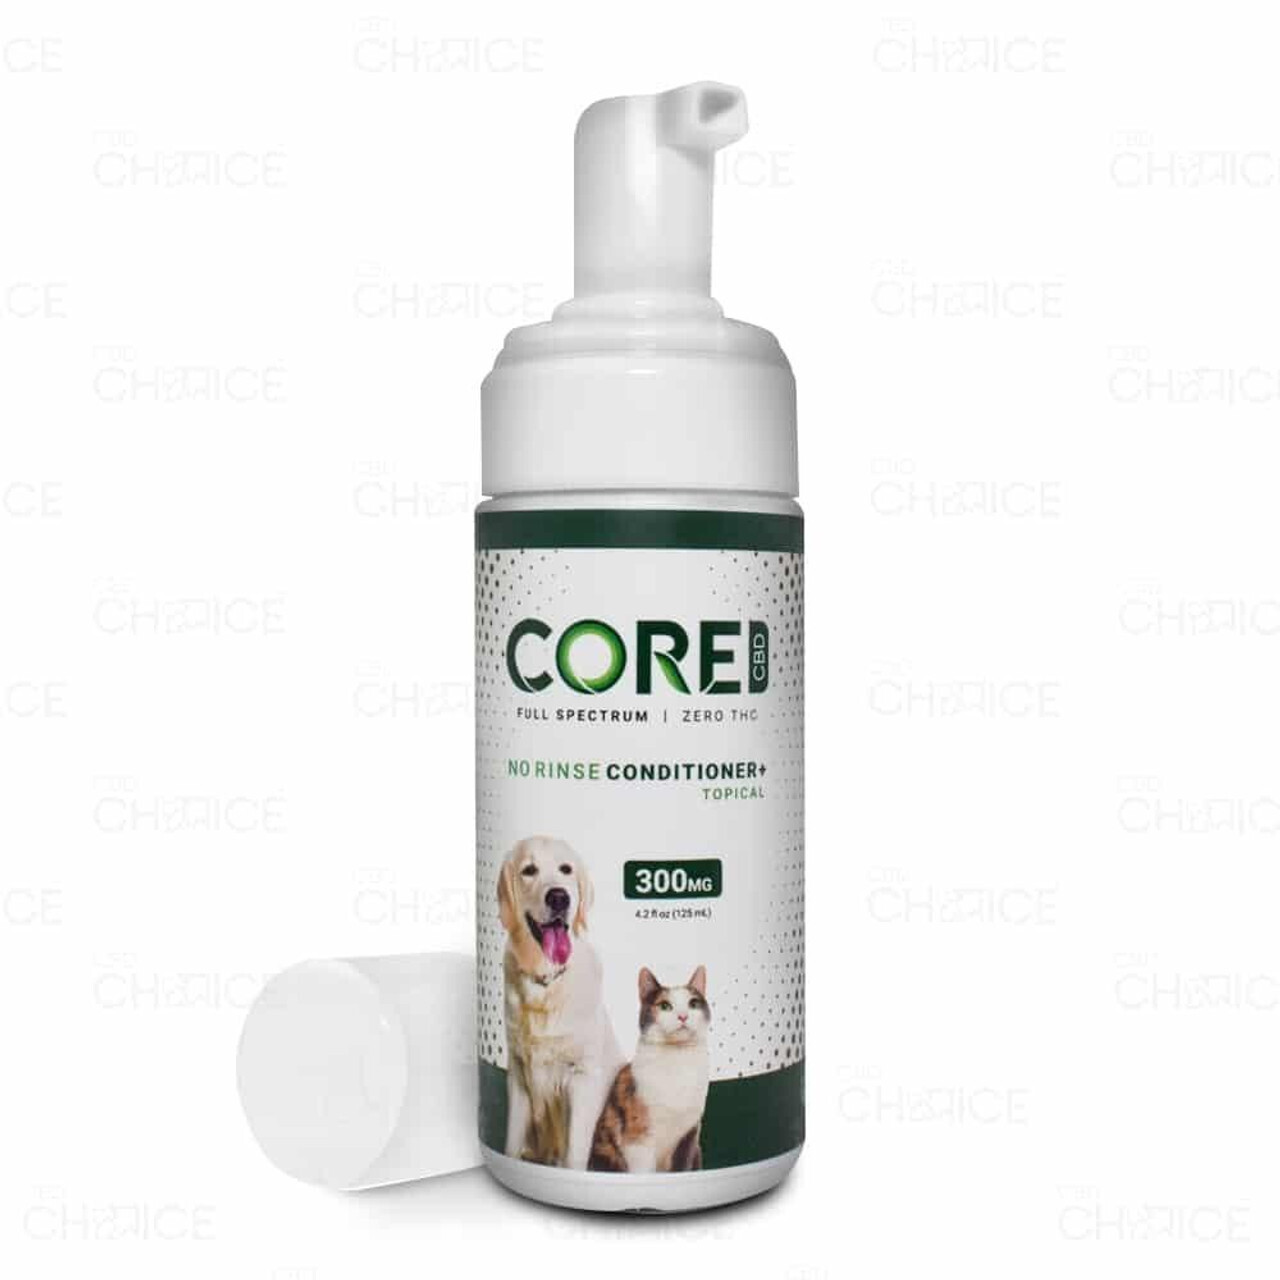 Core CBD No Rinse Pet Conditioner - 300mg